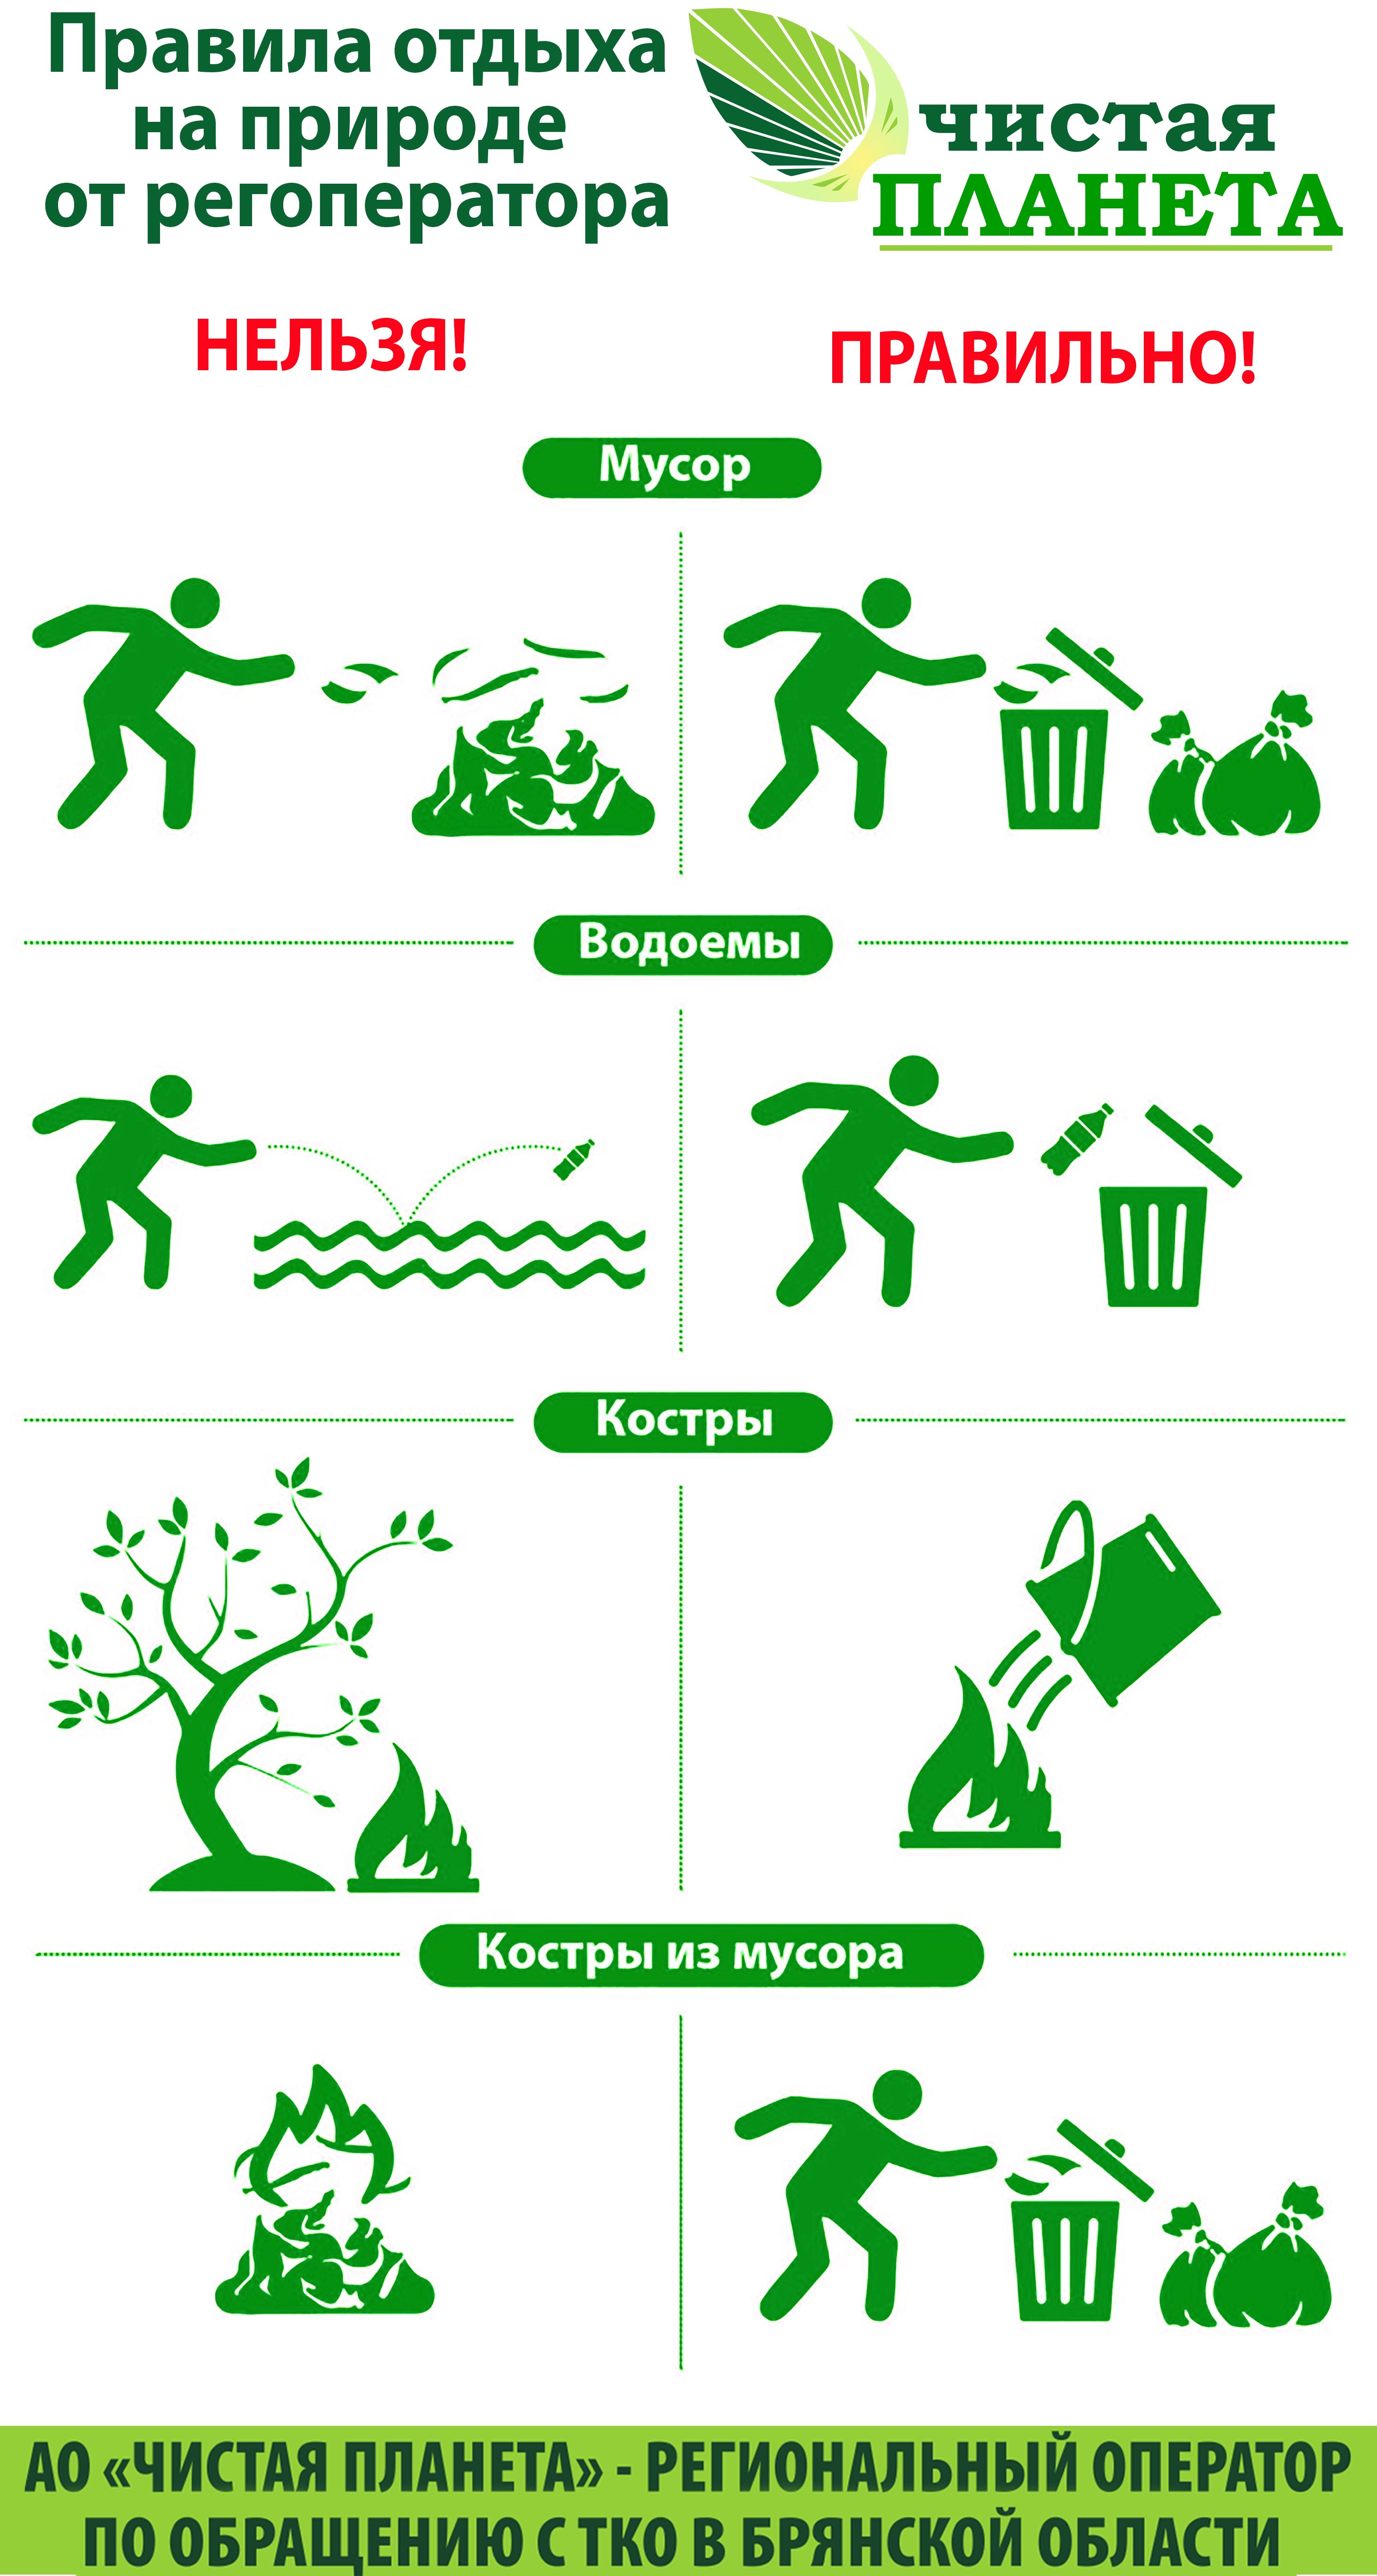 Экология и безопасность. Инфографика